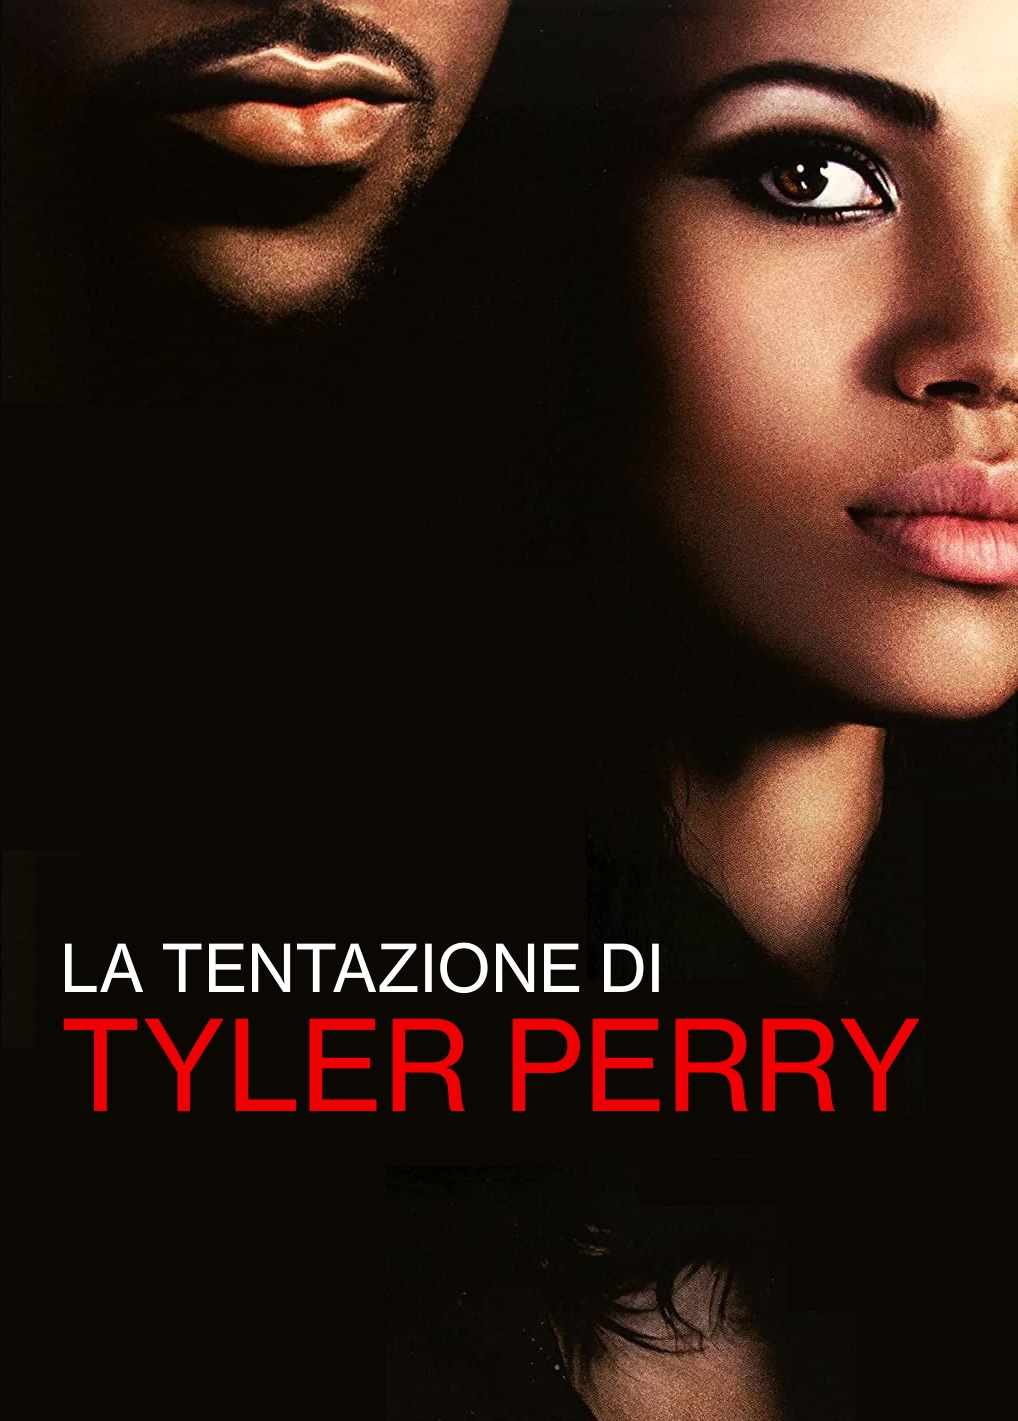 La tentazione di Tyler Perry [HD] (2013)